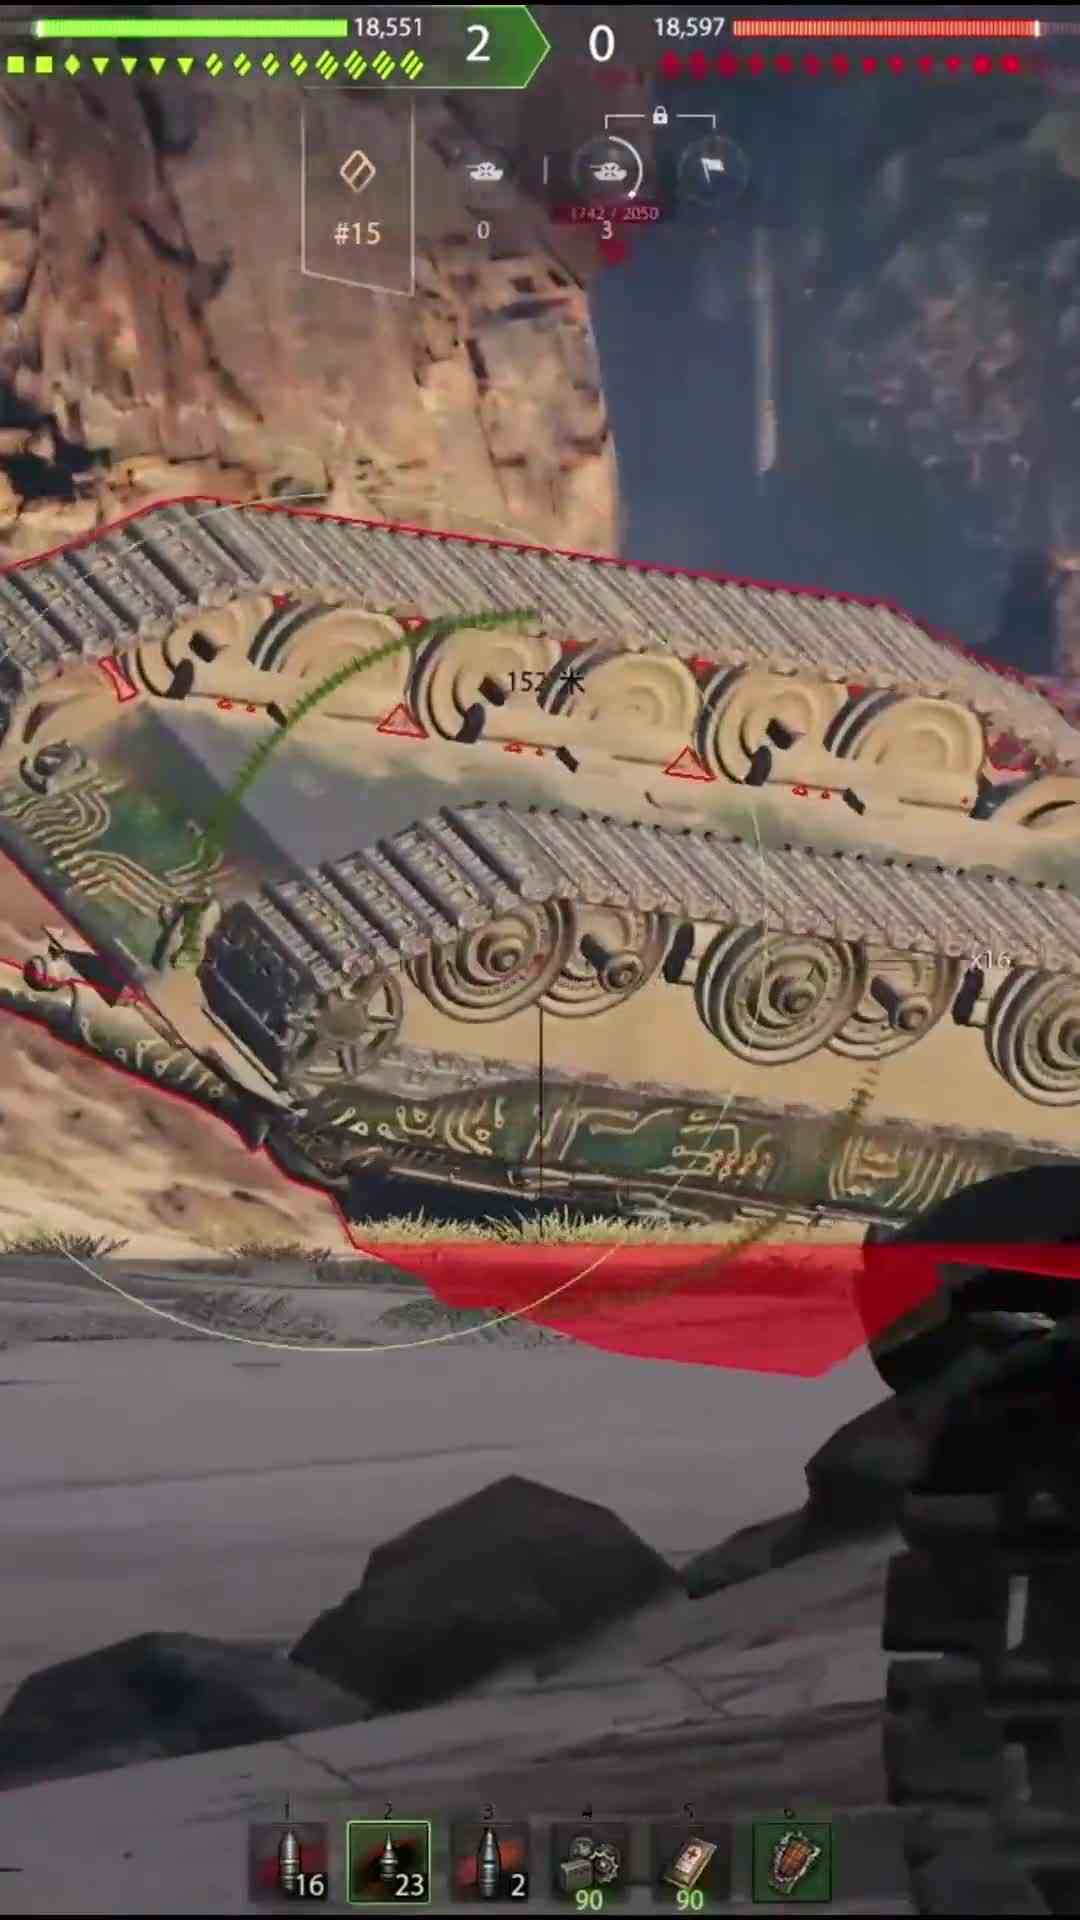 99%的玩家不知道的翻车技巧 收益最大化 坦克世界二创挑战《以战止战》MV二创